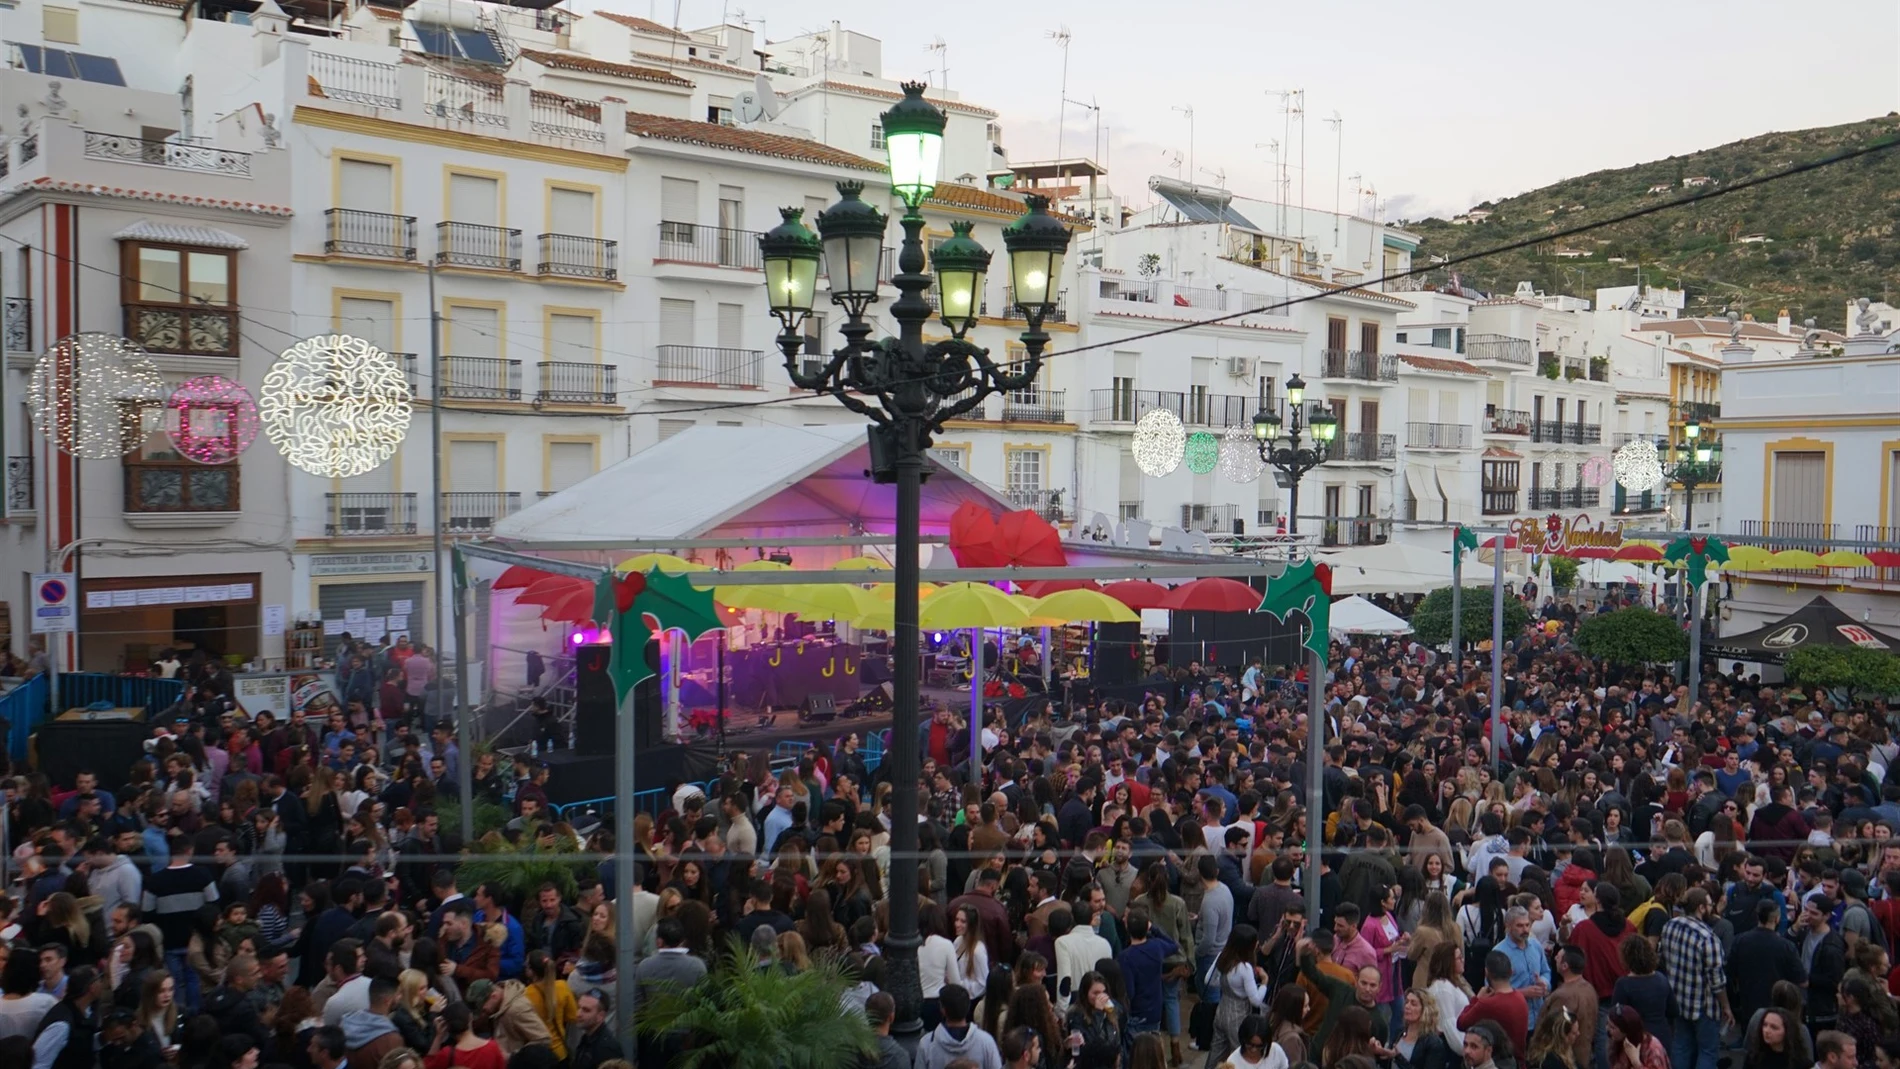 La trigésimo séptima edición de la Fiesta de las Migas de Torrox (Málaga) “ha vuelto a rebasar los 40.000 asistentes” este domingo, según puso de relieve el alcalde del municipio, Óscar Medina / Foto: EP